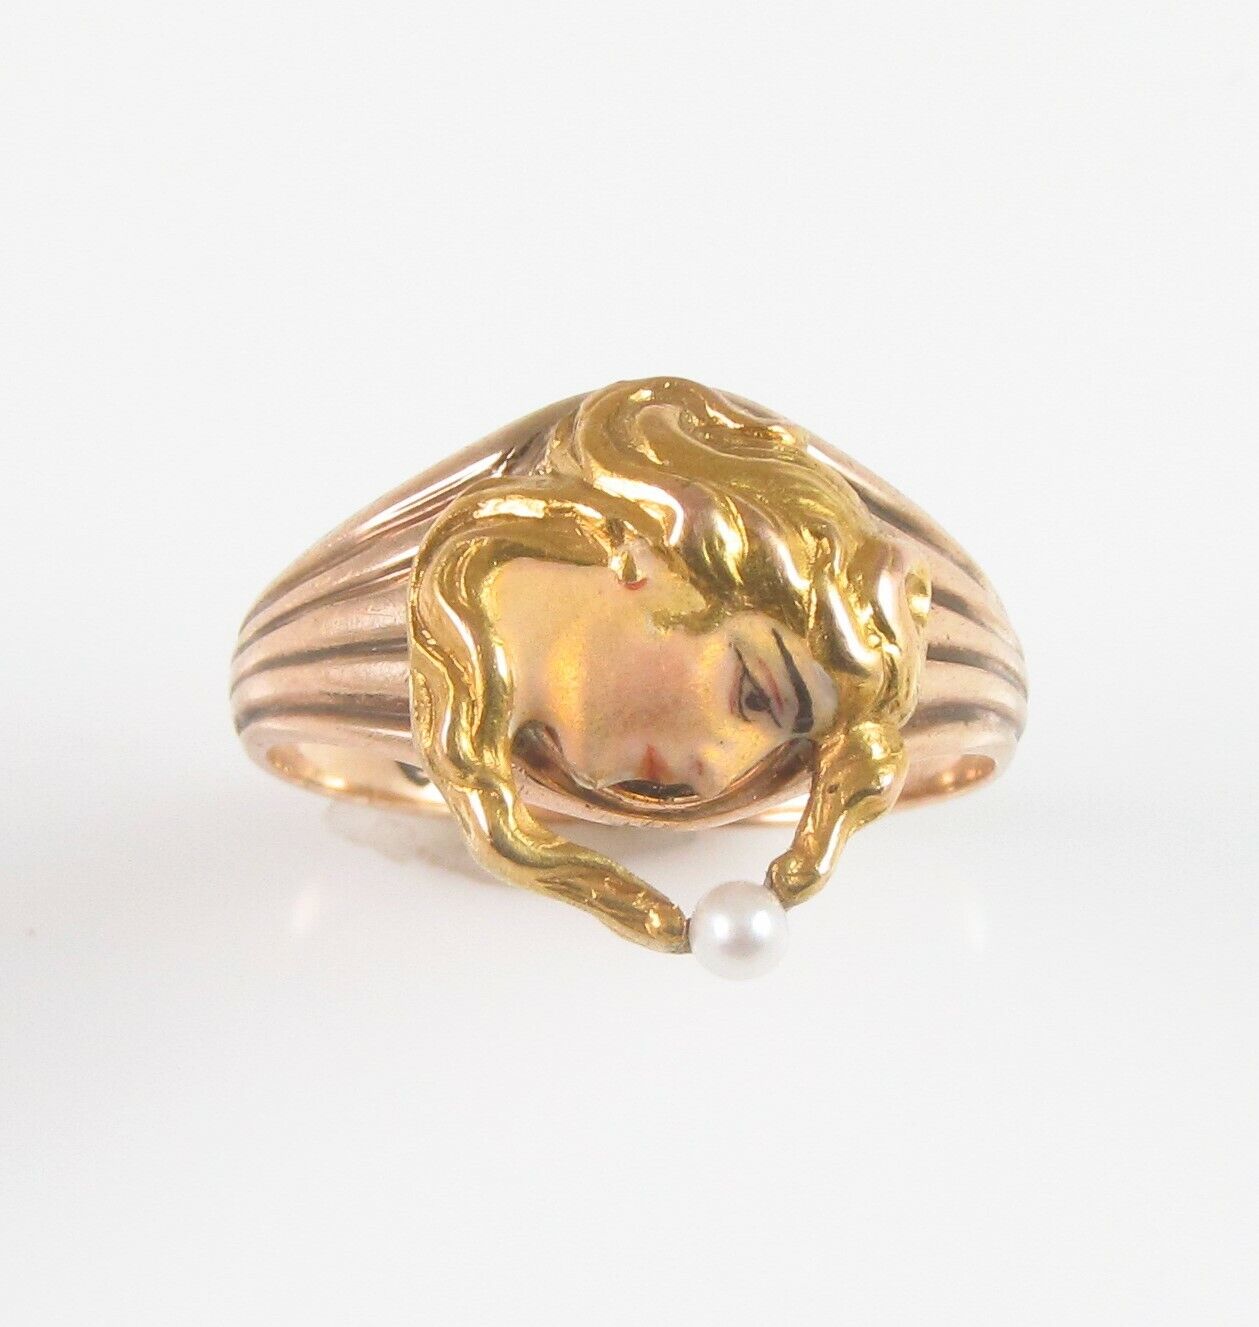 Antique 14k Gold Art Nouveau Enamel & Pearl Maiden Lady Conversion Ring Size 4.5